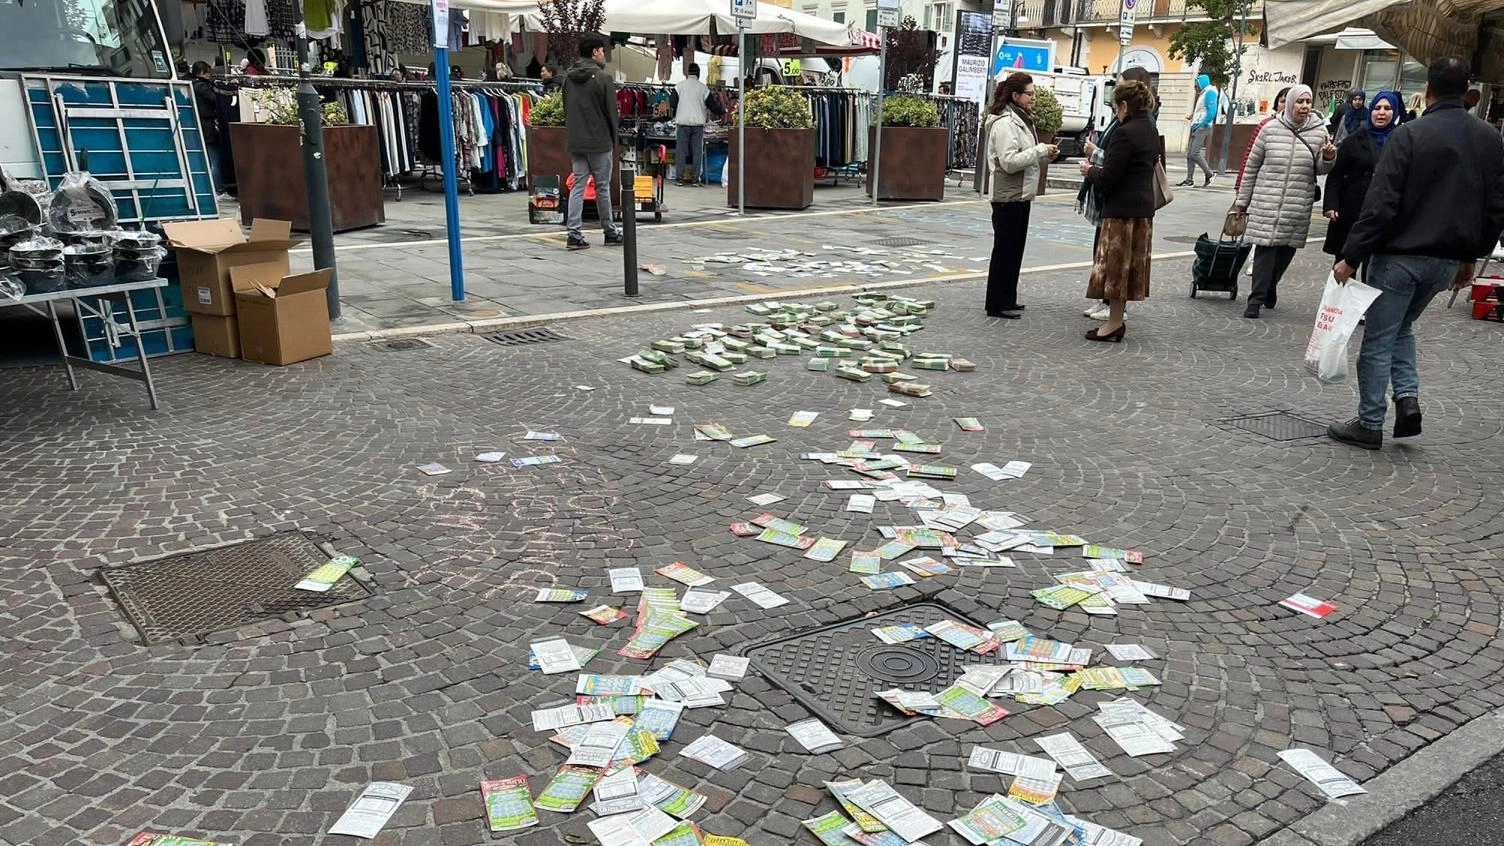 A Brescia, una persona ha speso 368mila euro in gratta e vinci senza vincerne uno solo, evidenziando il pericolo della ludopatia. Un flash mob ha portato i tagliandi nelle strade per sensibilizzare sull'azzardo.